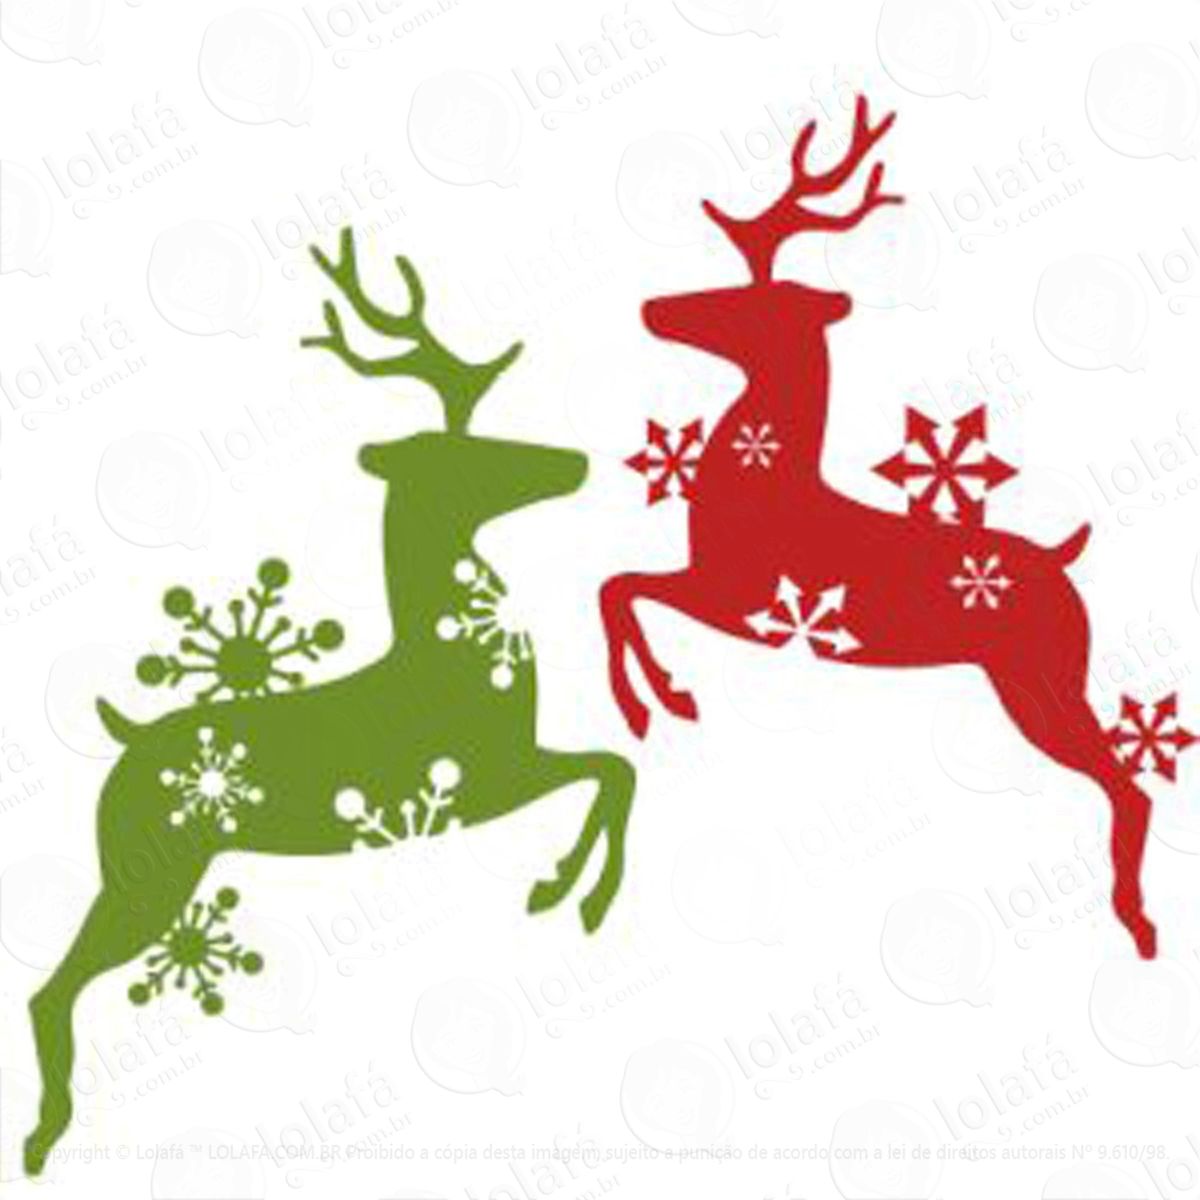 renas e flocos de neve adesivo de natal para vitrine, parede, porta de vidro - decoração natalina mod:68